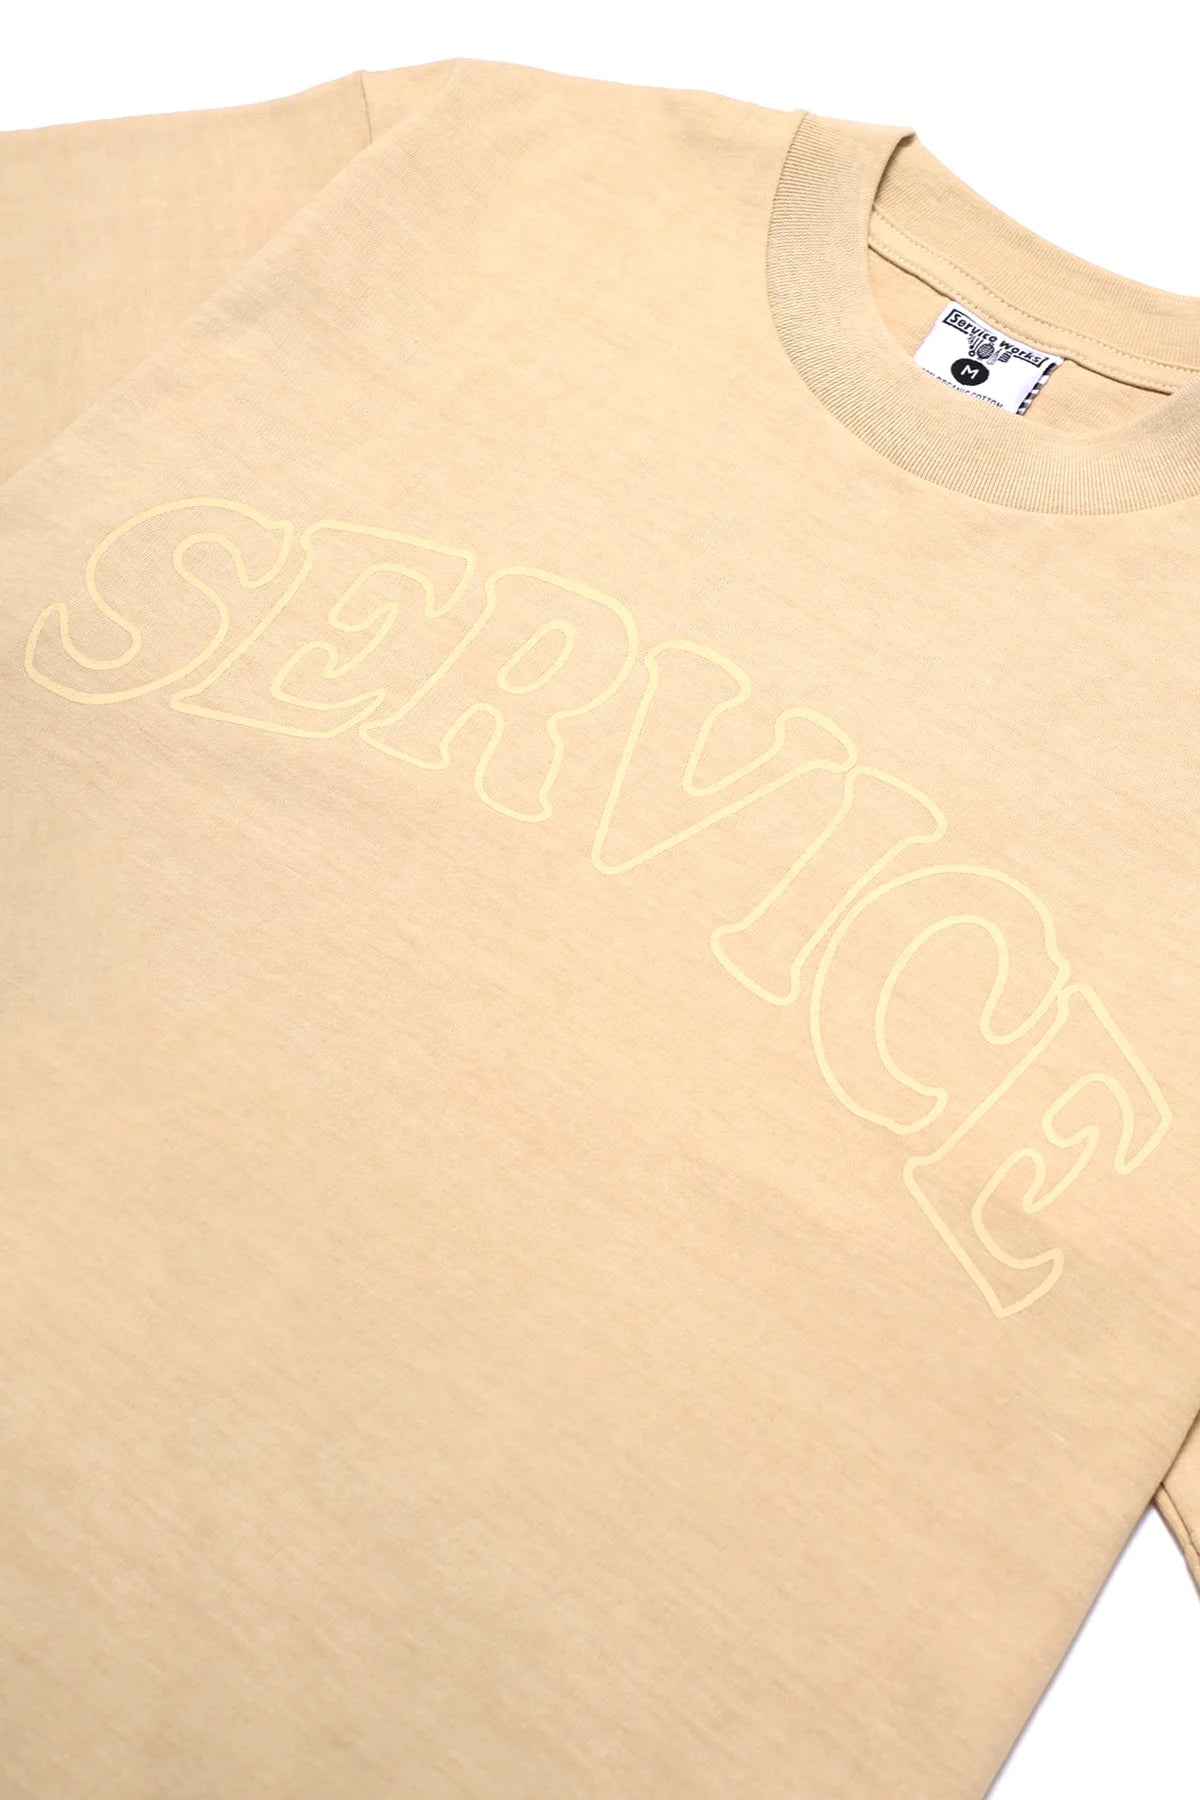 Service Works Arch Logo T-Shirt Herren T-Shirt Service Works 